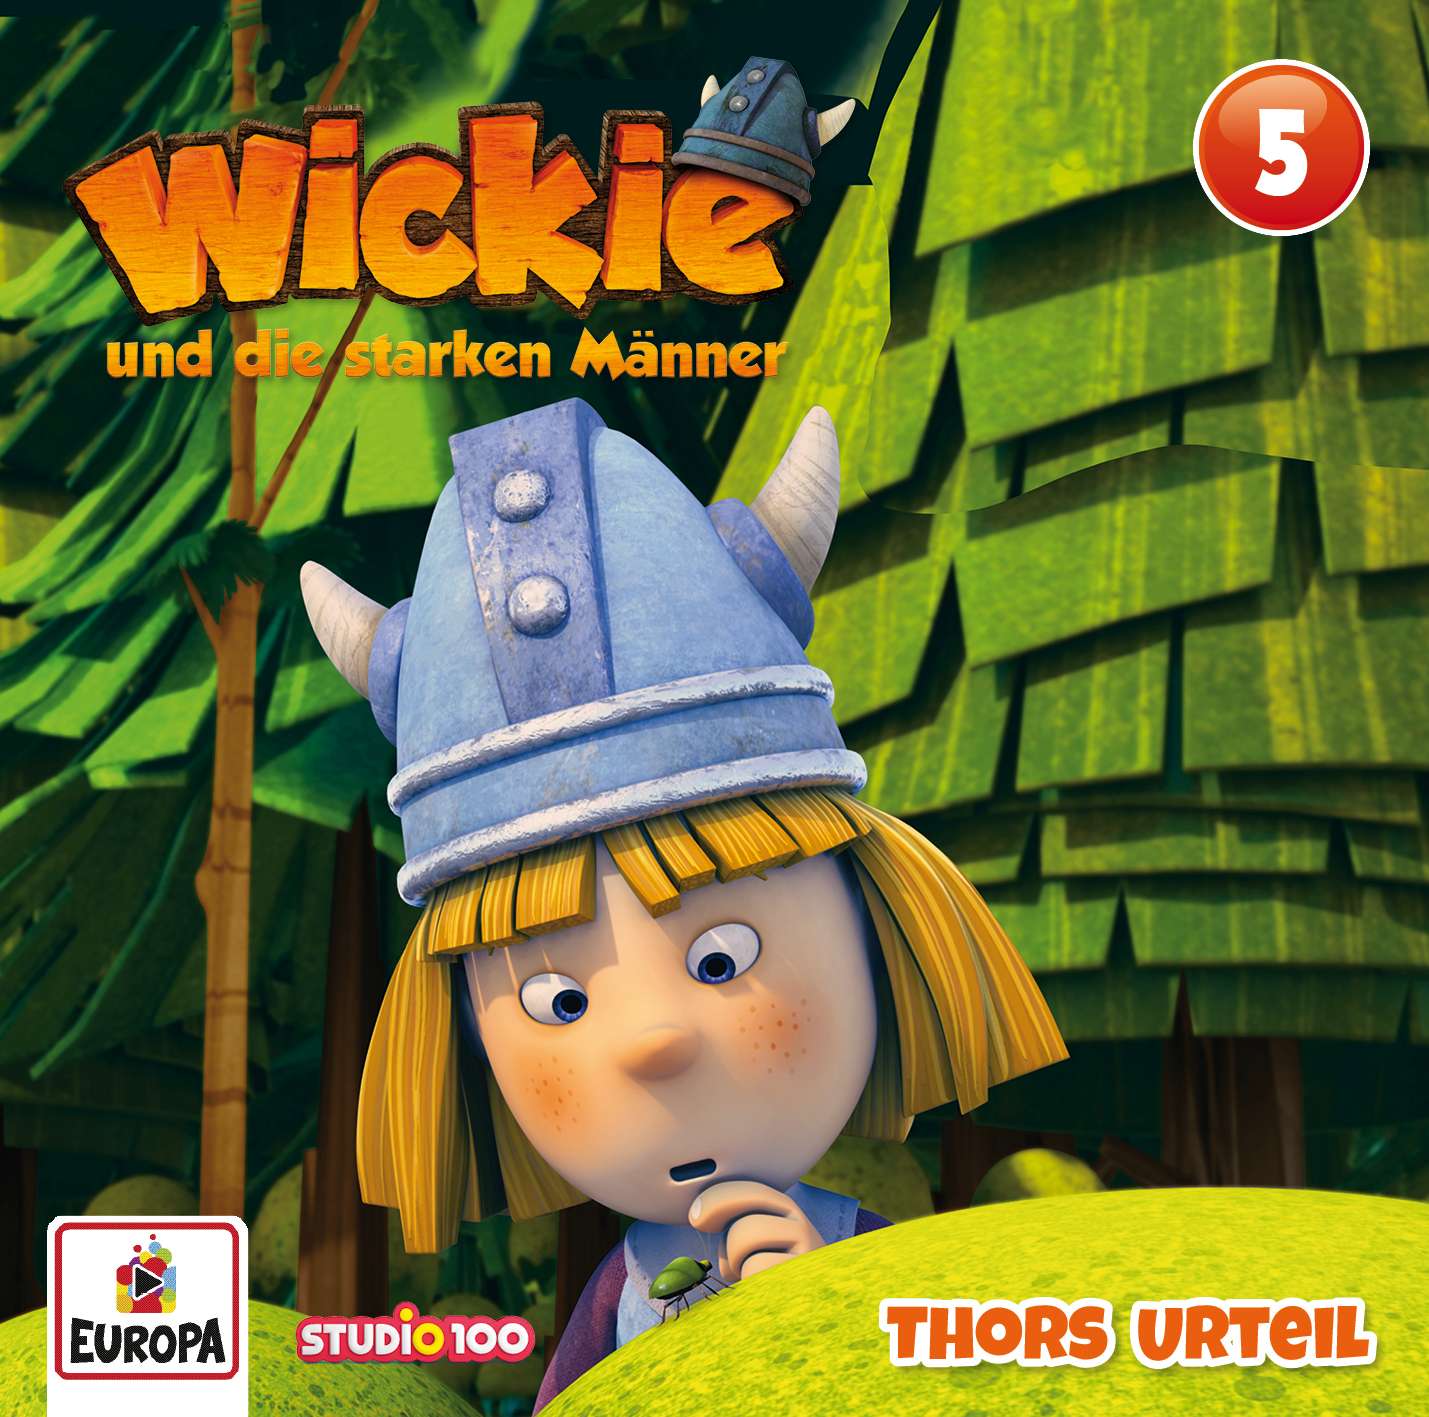 Wickie - Thors Urteil (CGI)